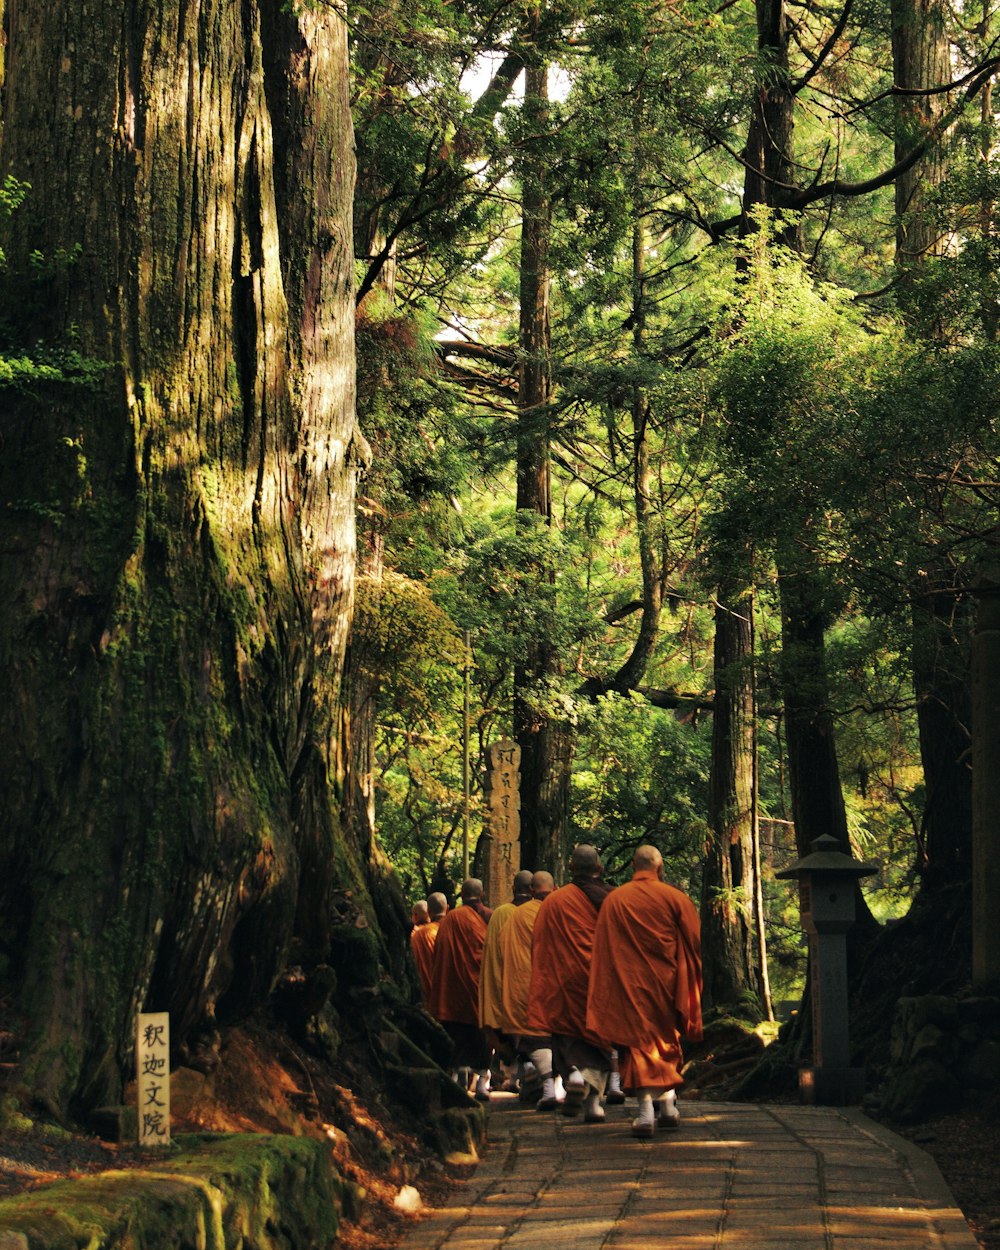 Mönche gehen auf einem von Bäumen umgebenen Weg